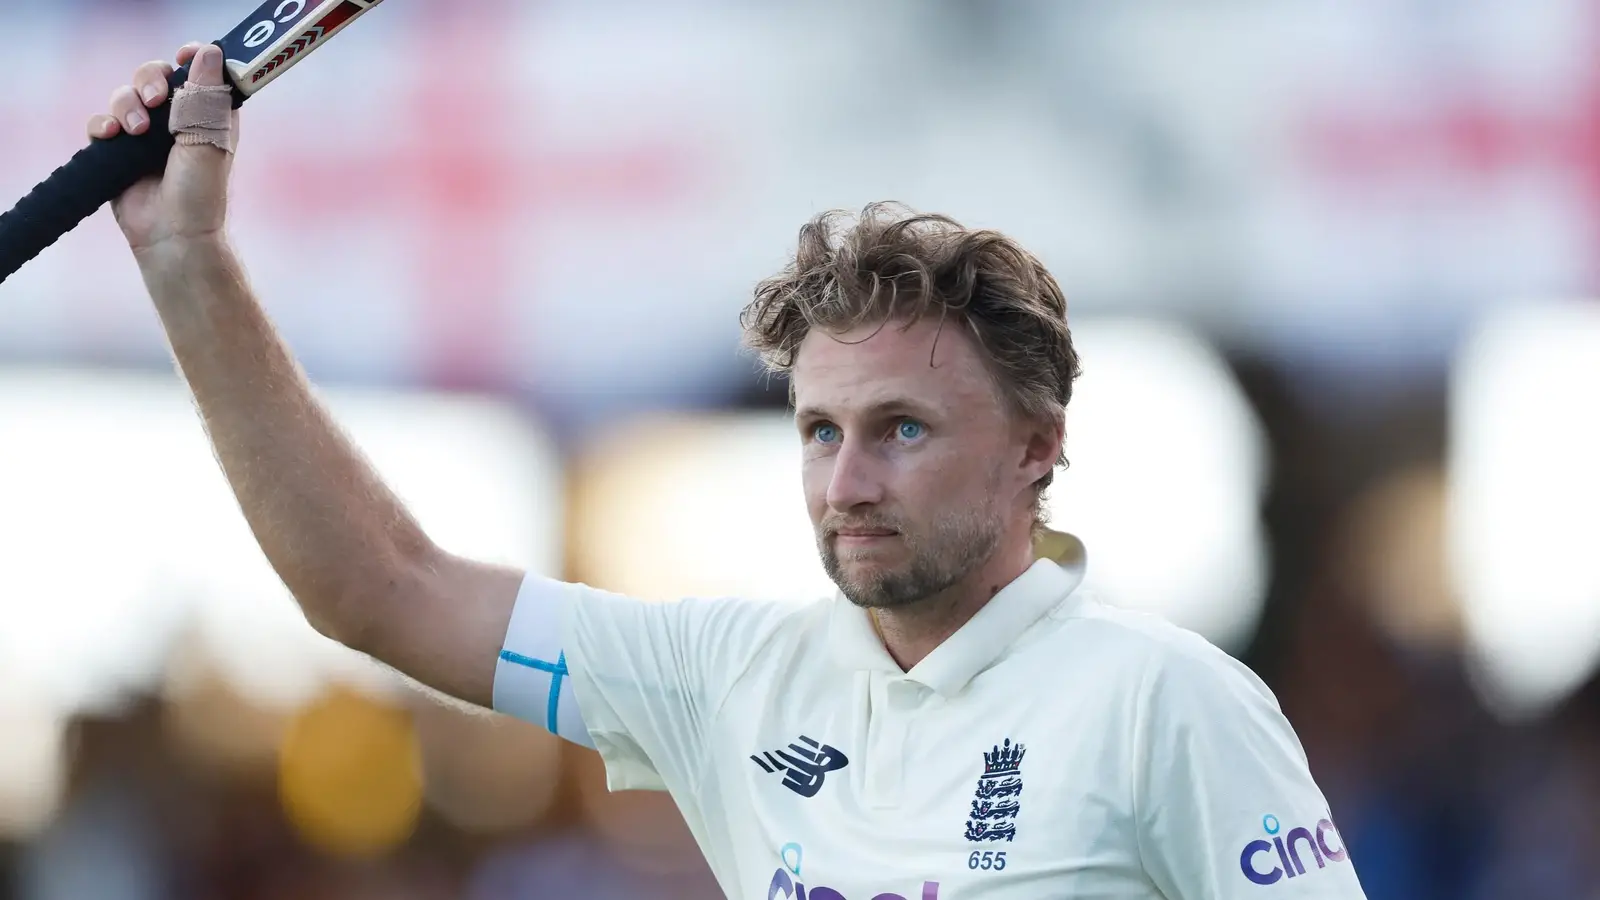  WI vs ENG: रूट के 119 रन से इंग्लैंड को दूसरे टेस्ट में मजबूत शुरुआत करने में मदद मिली |  क्रिकेट
